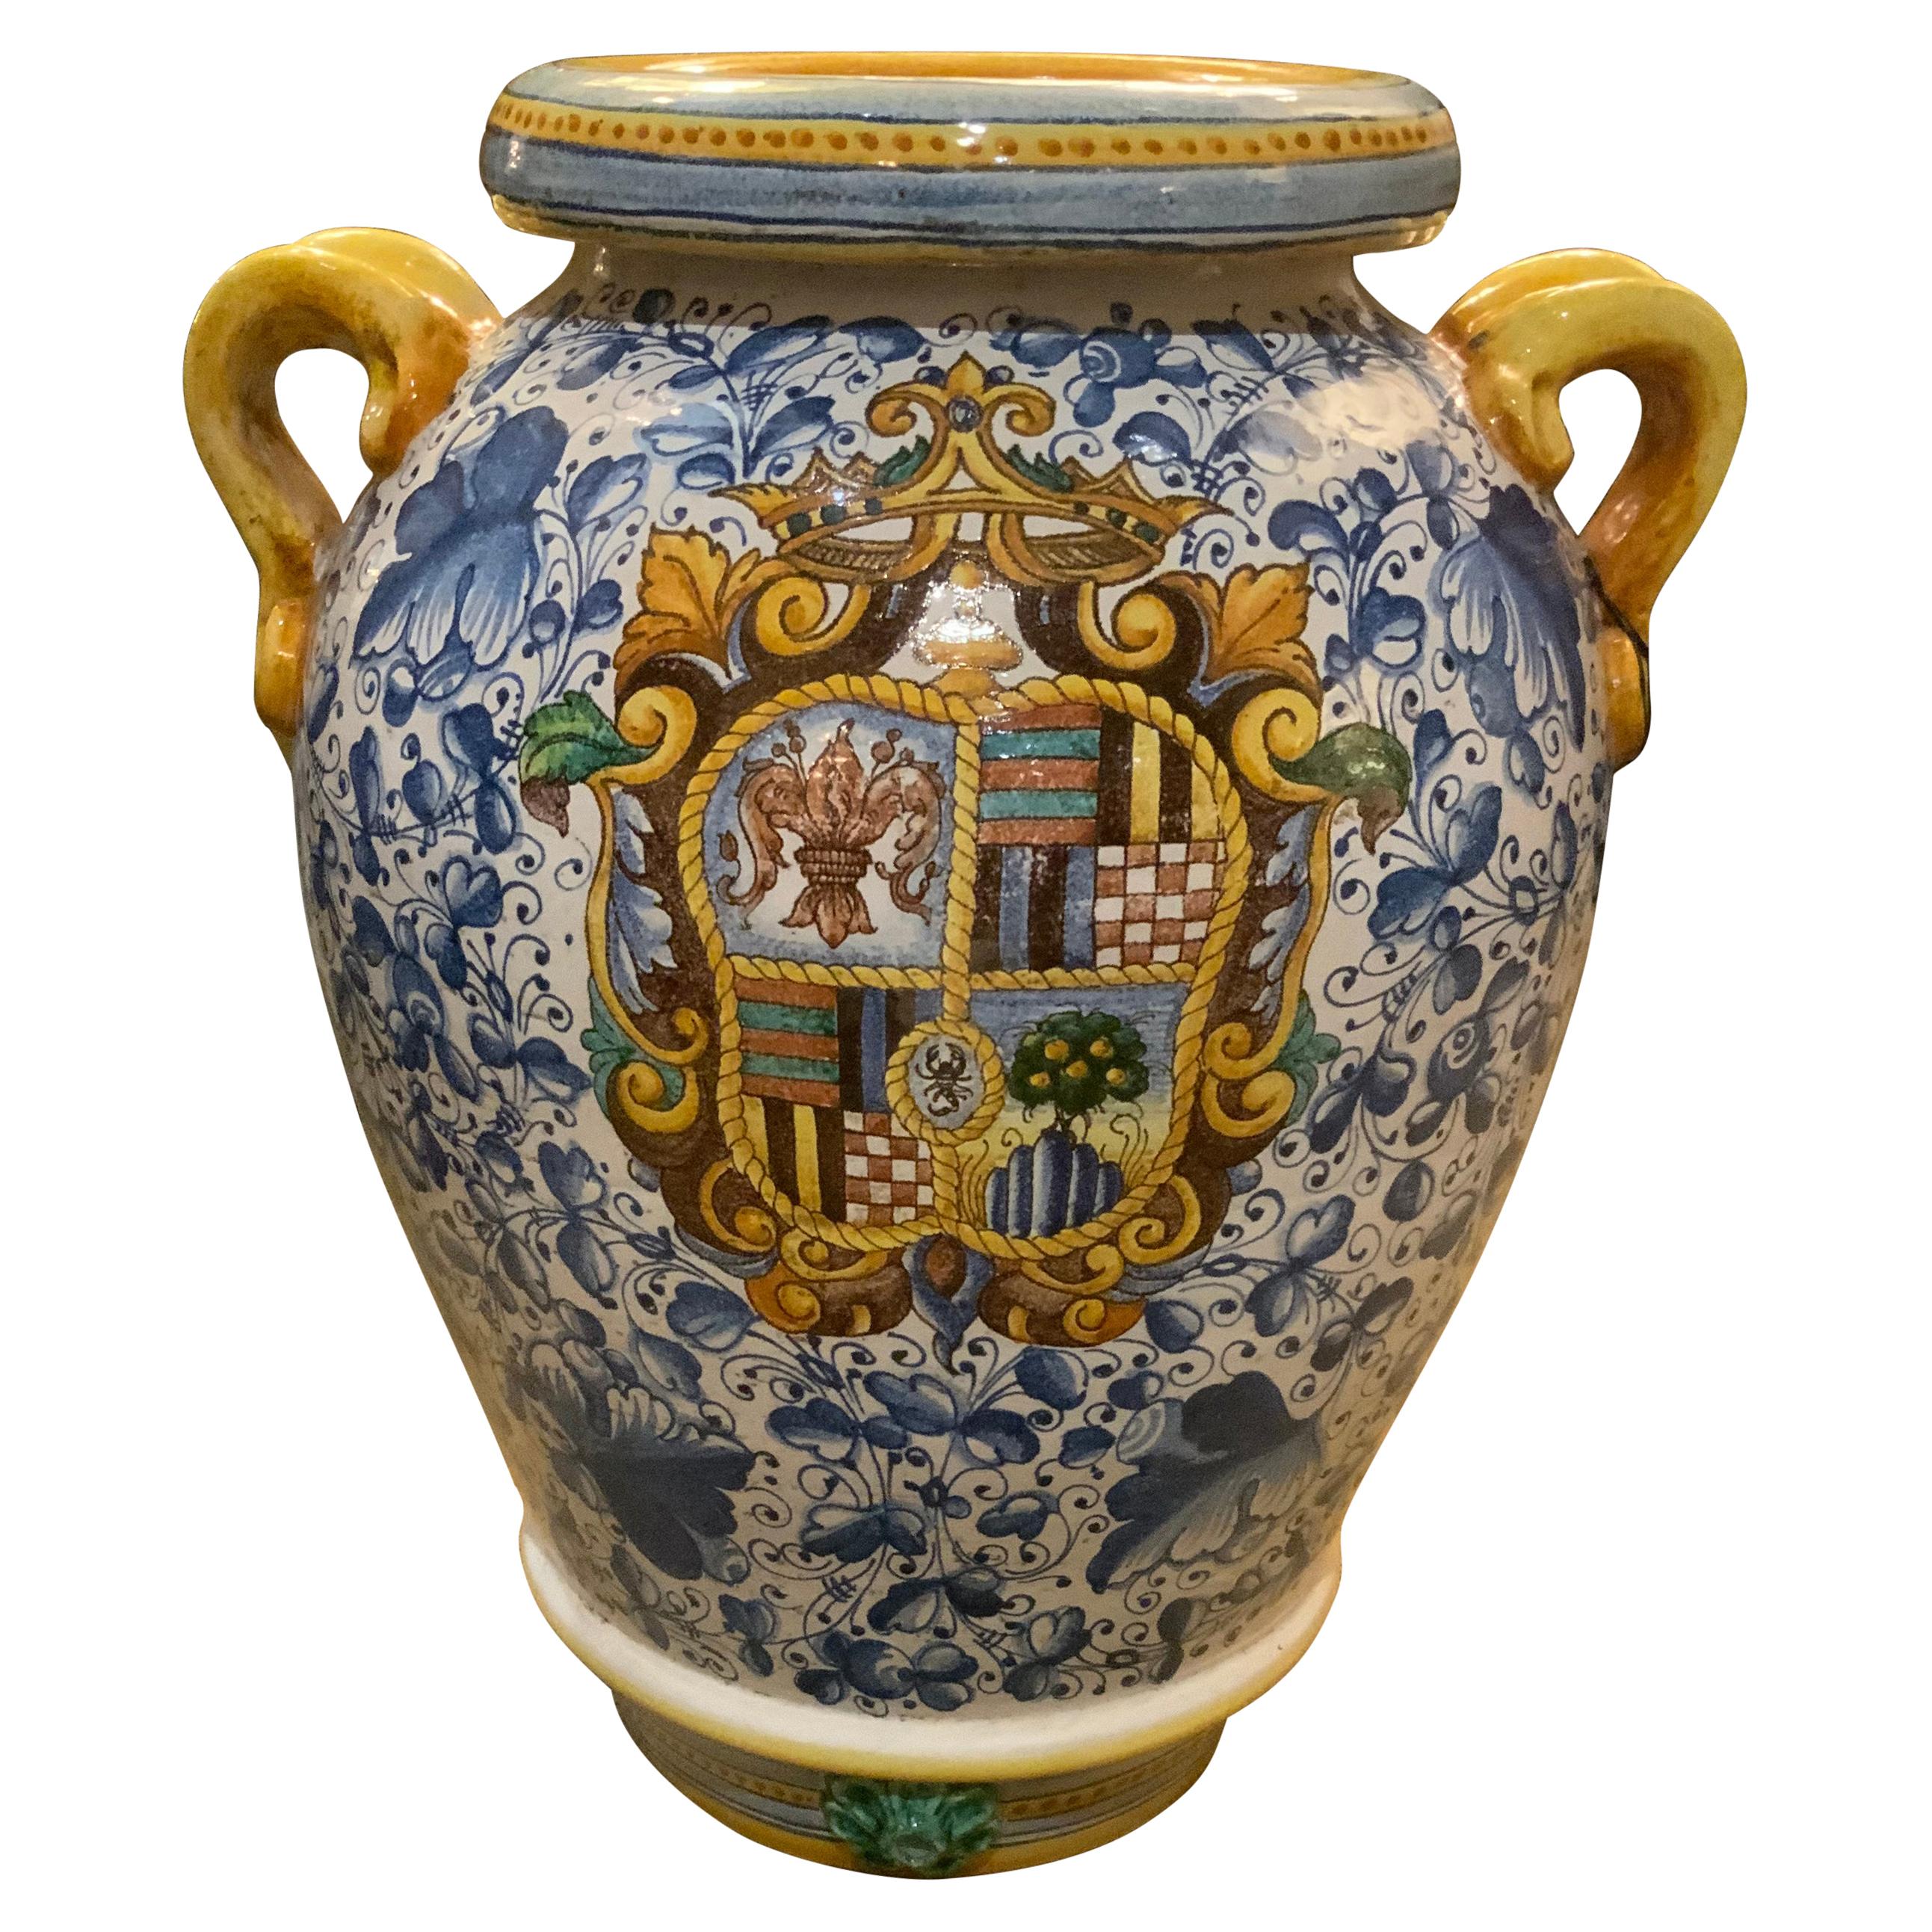 Grand vase en faïence, style Renaissance, 19ème siècle